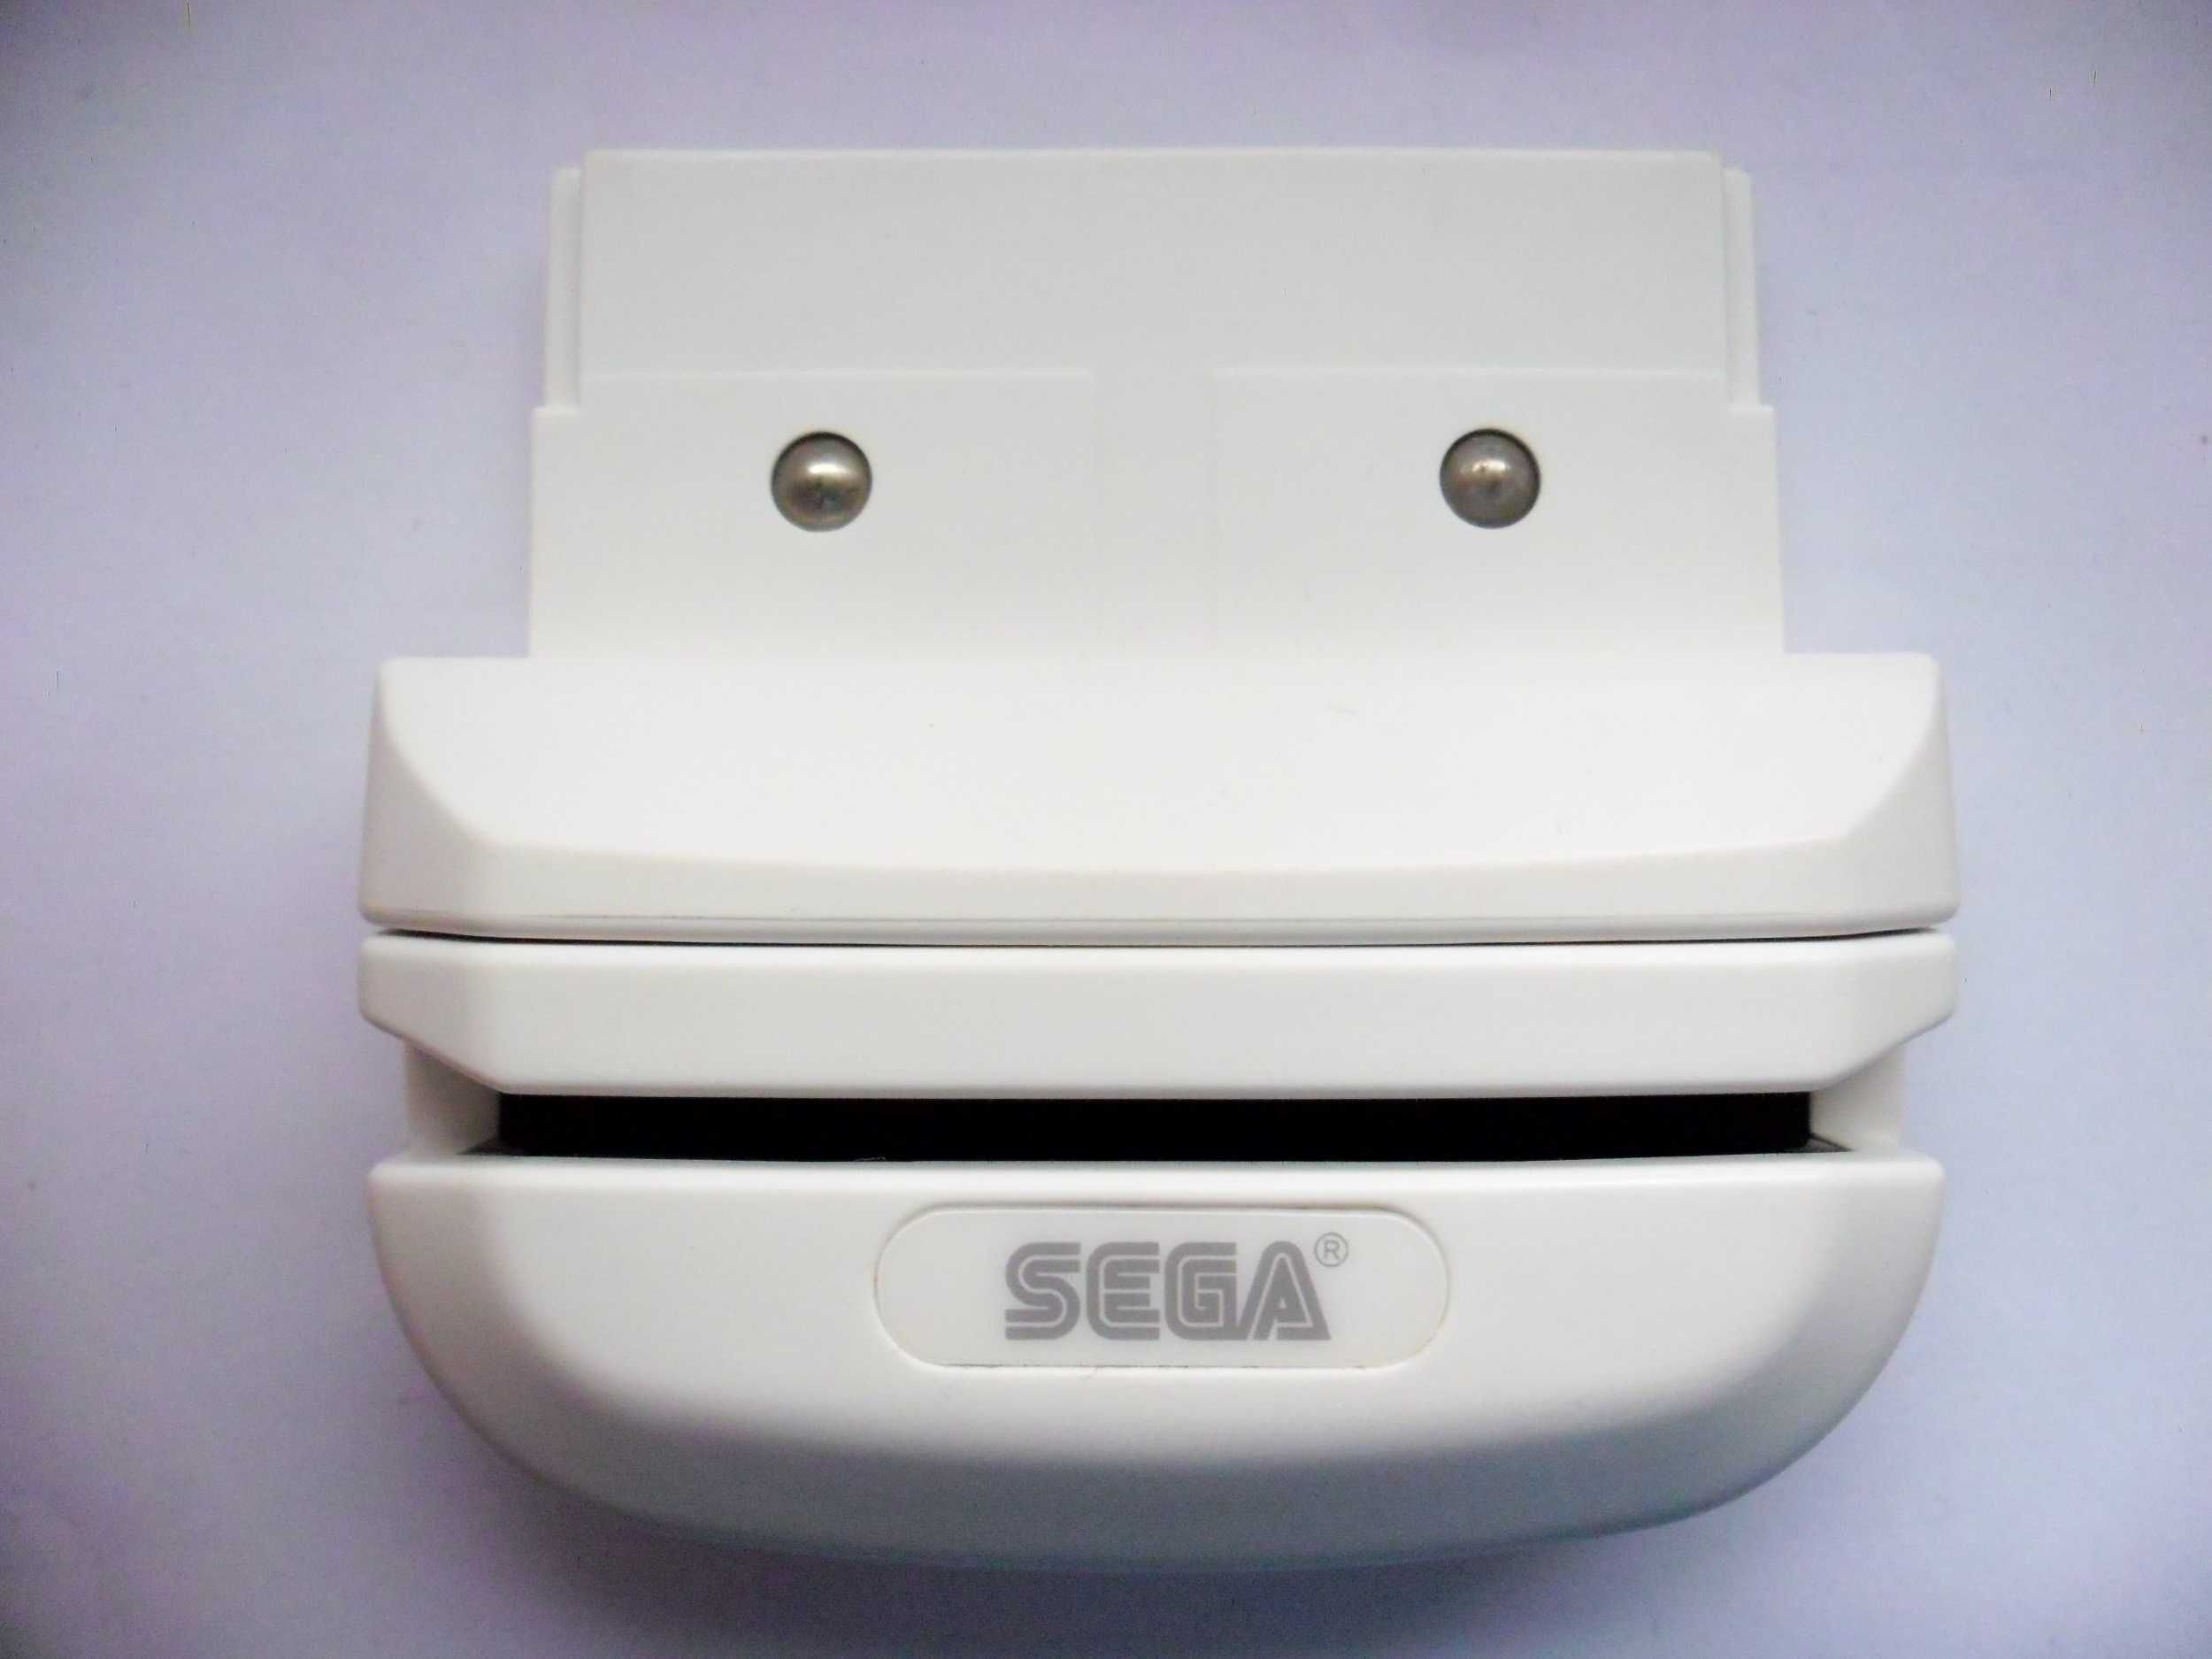 3 x Karta SEGA Card Reader HCV-1000 Nintendo DS